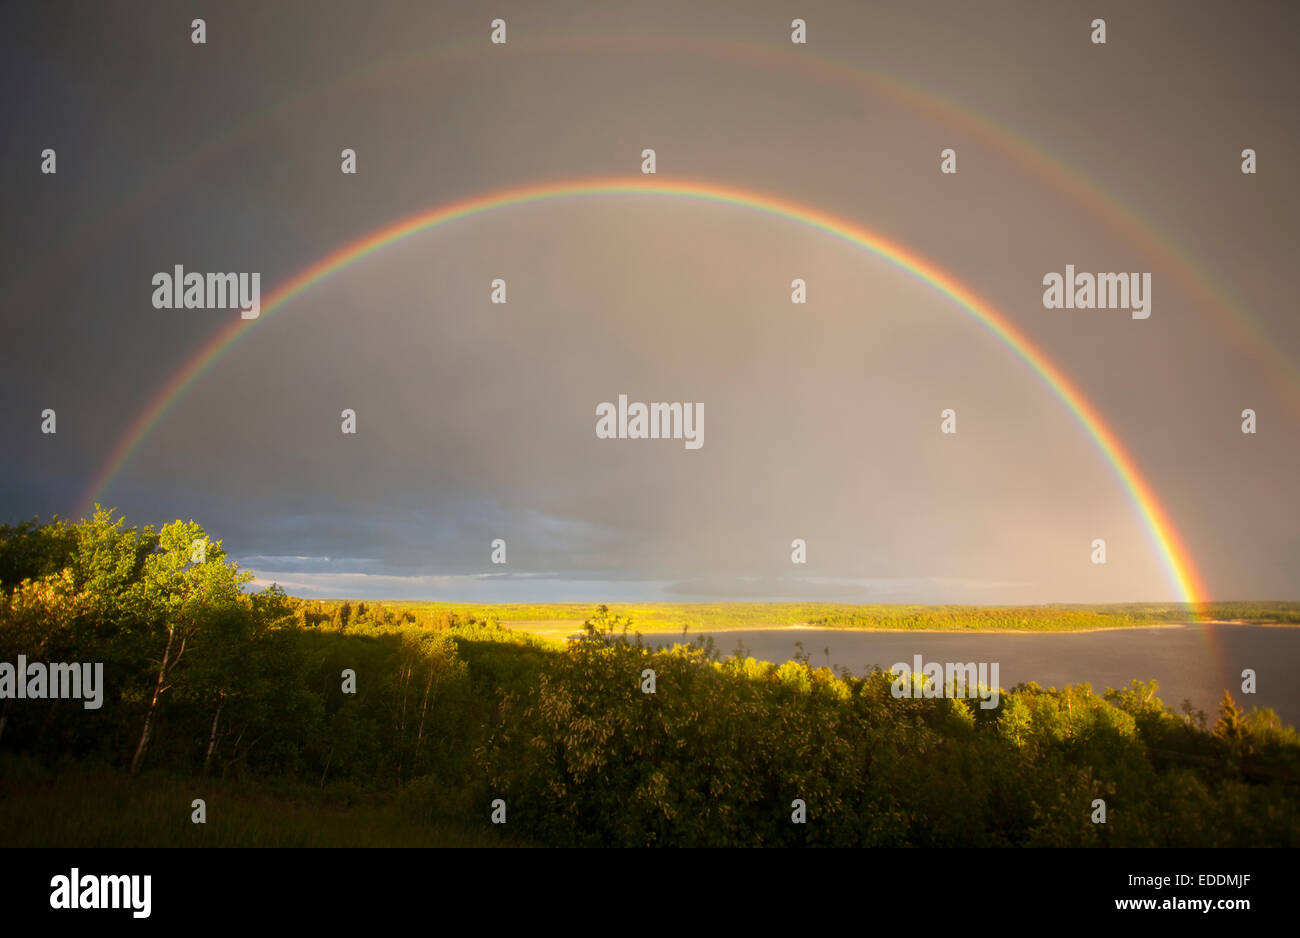 Ein doppelter Regenbogen am Himmel wölbte sich über das Land. Stockfoto